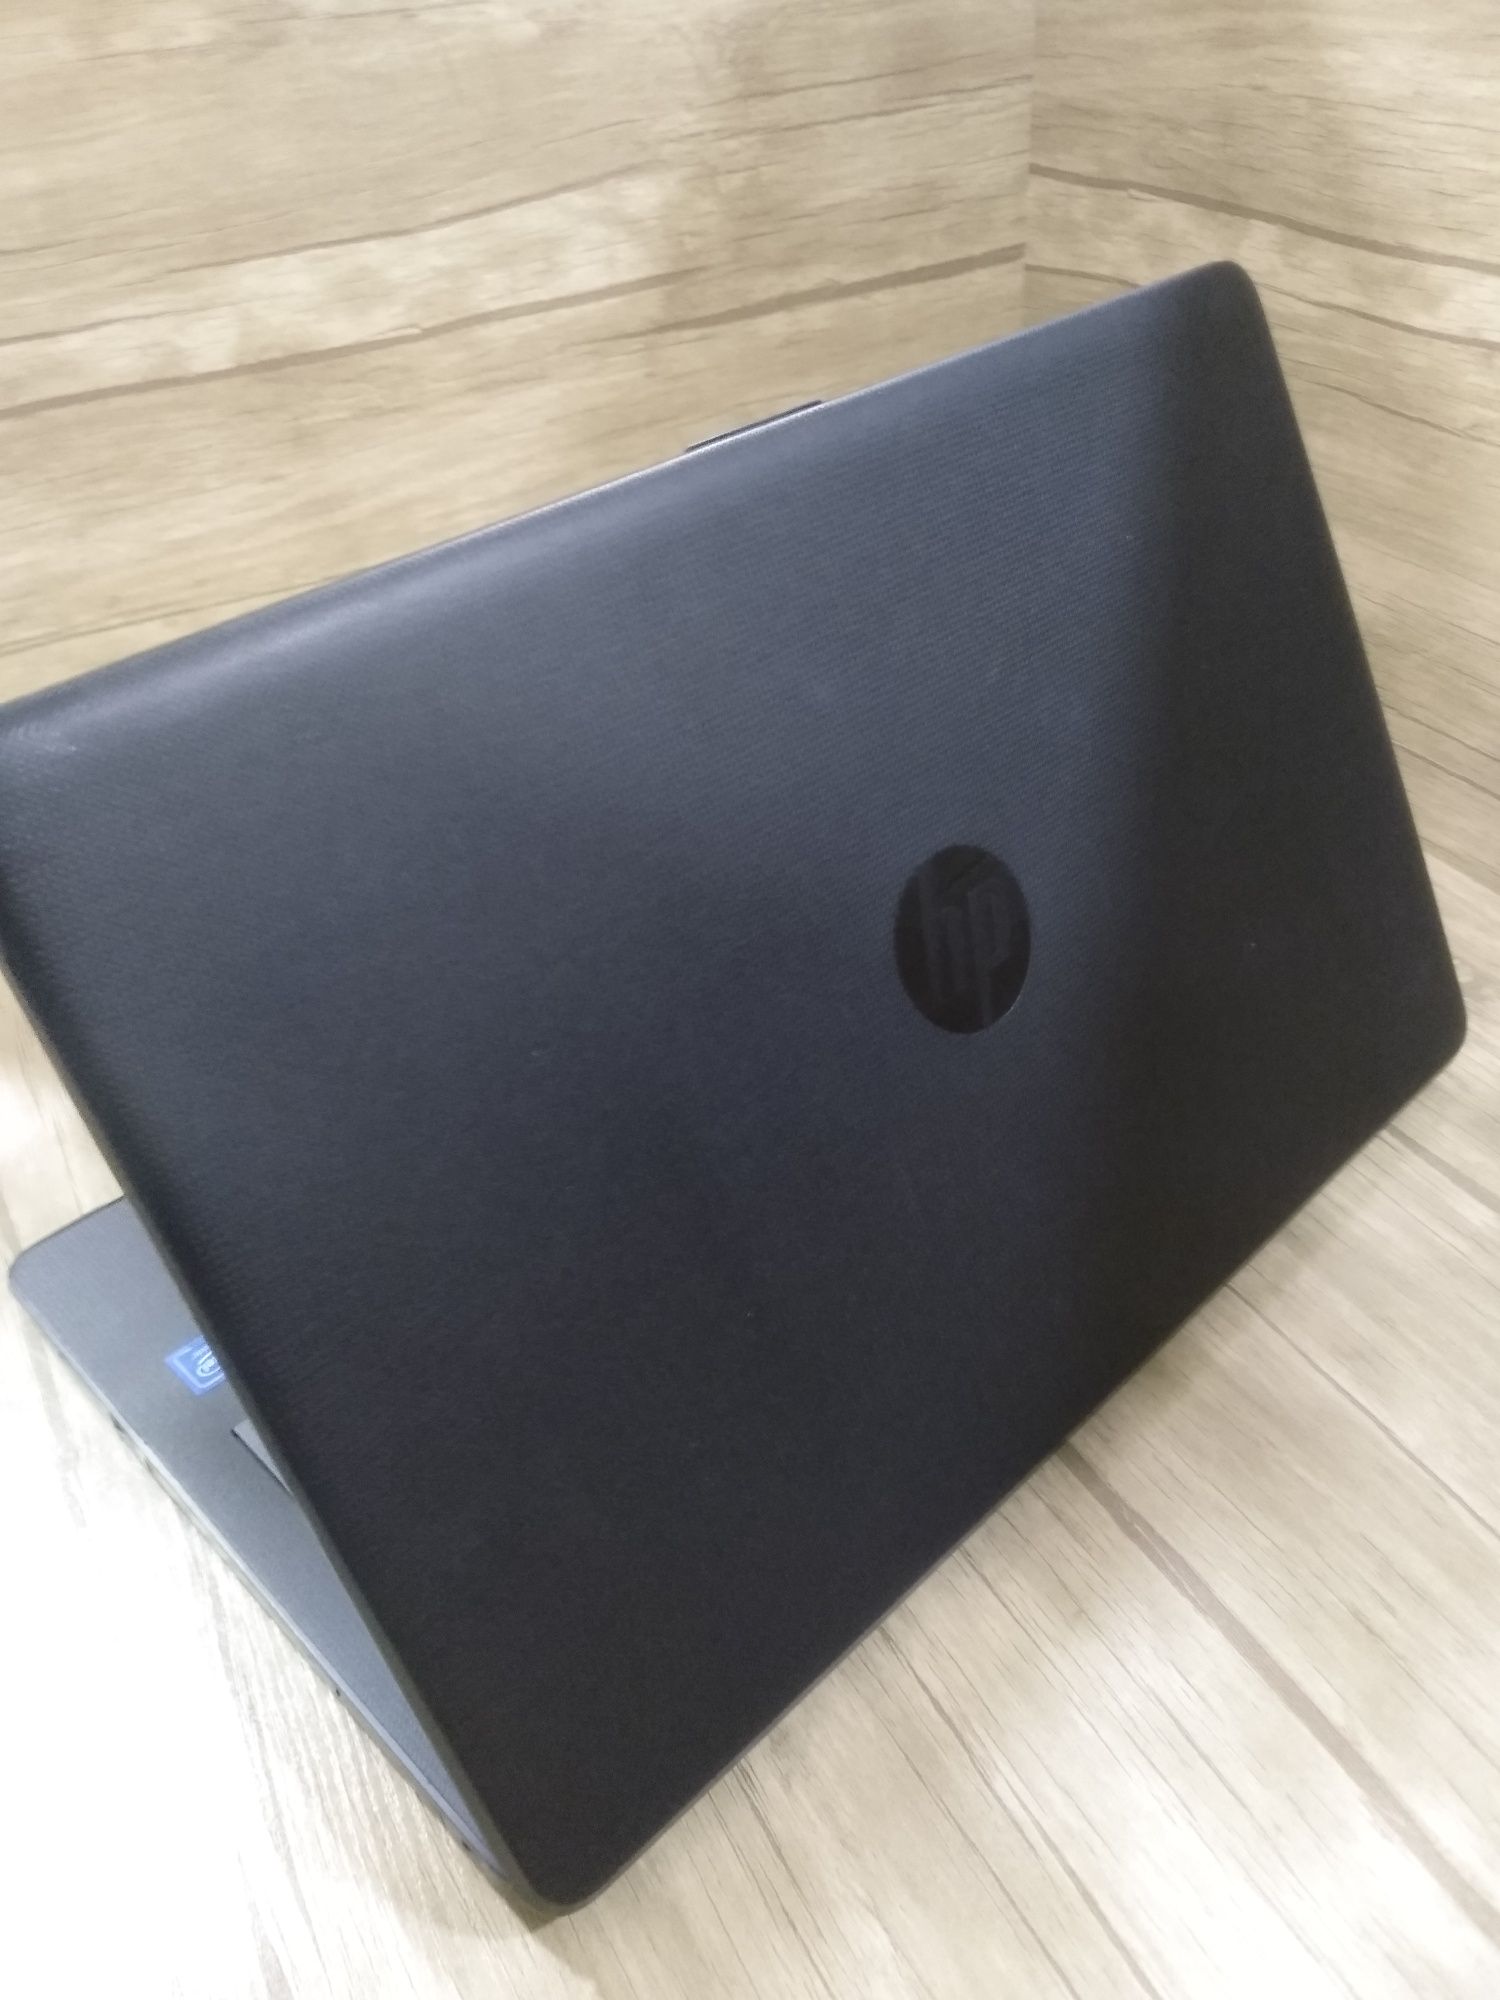 HP laptop 15-ra008nia